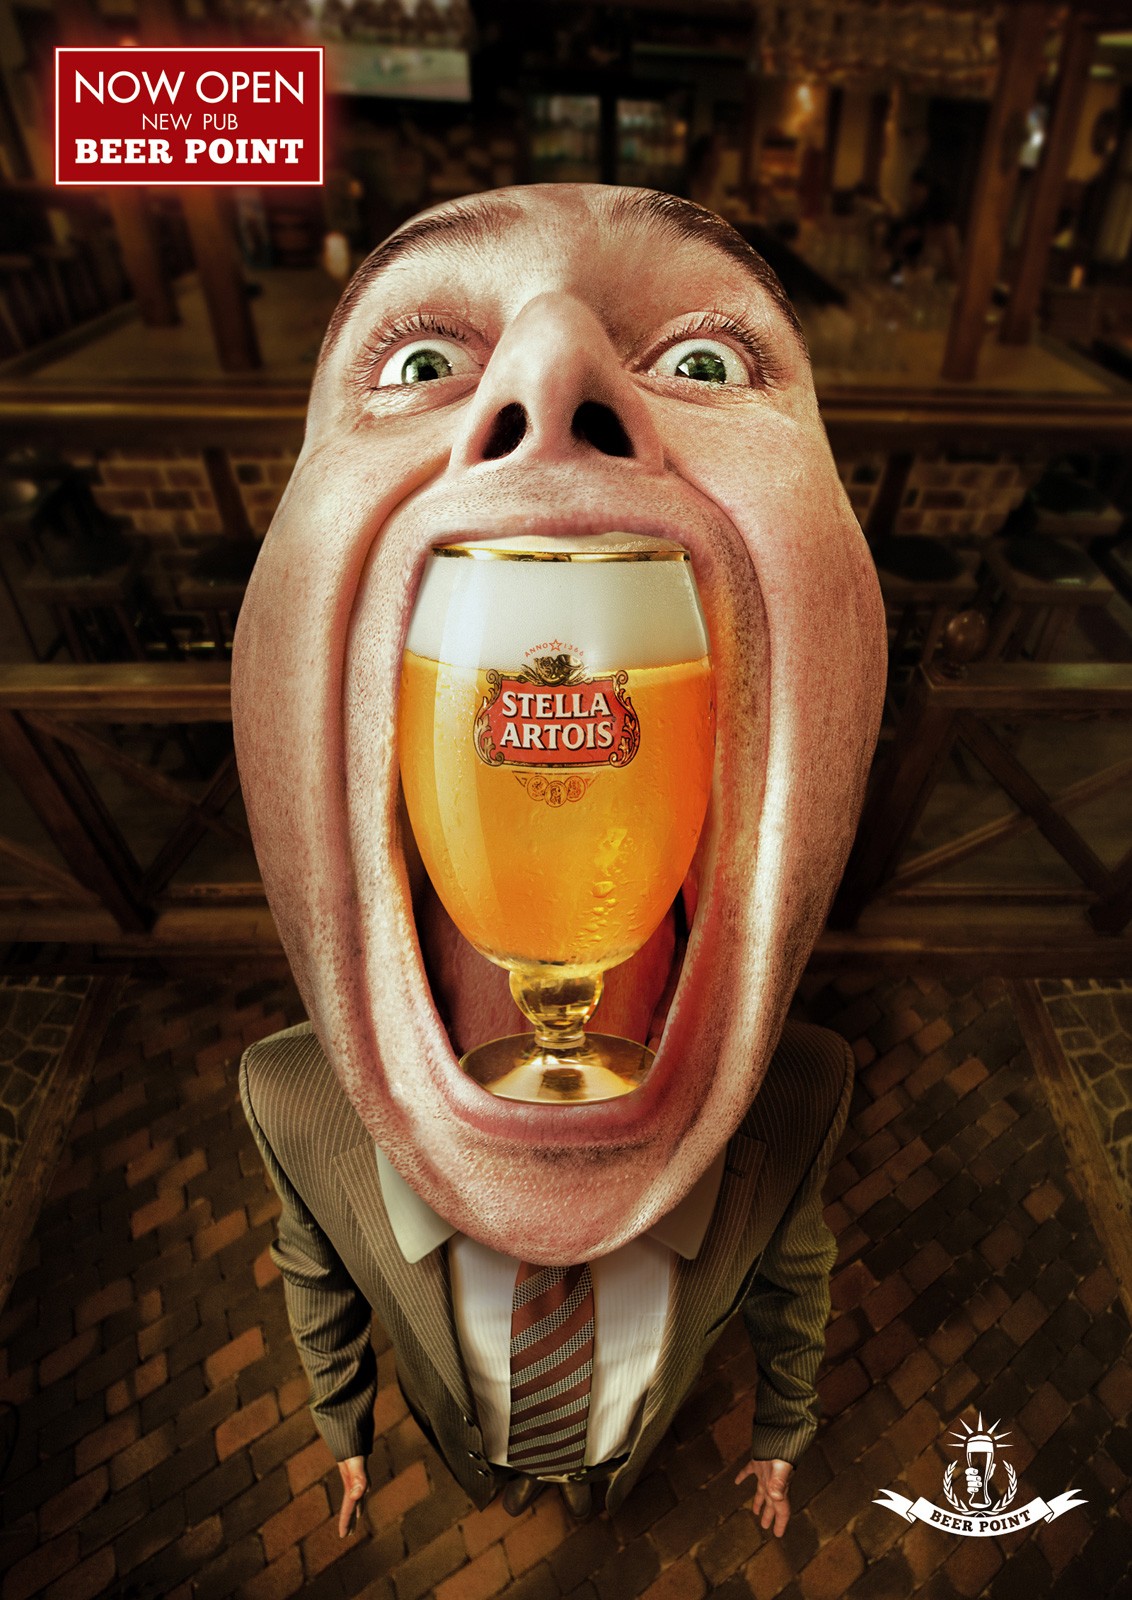 beer point pub啤酒广告创意海报